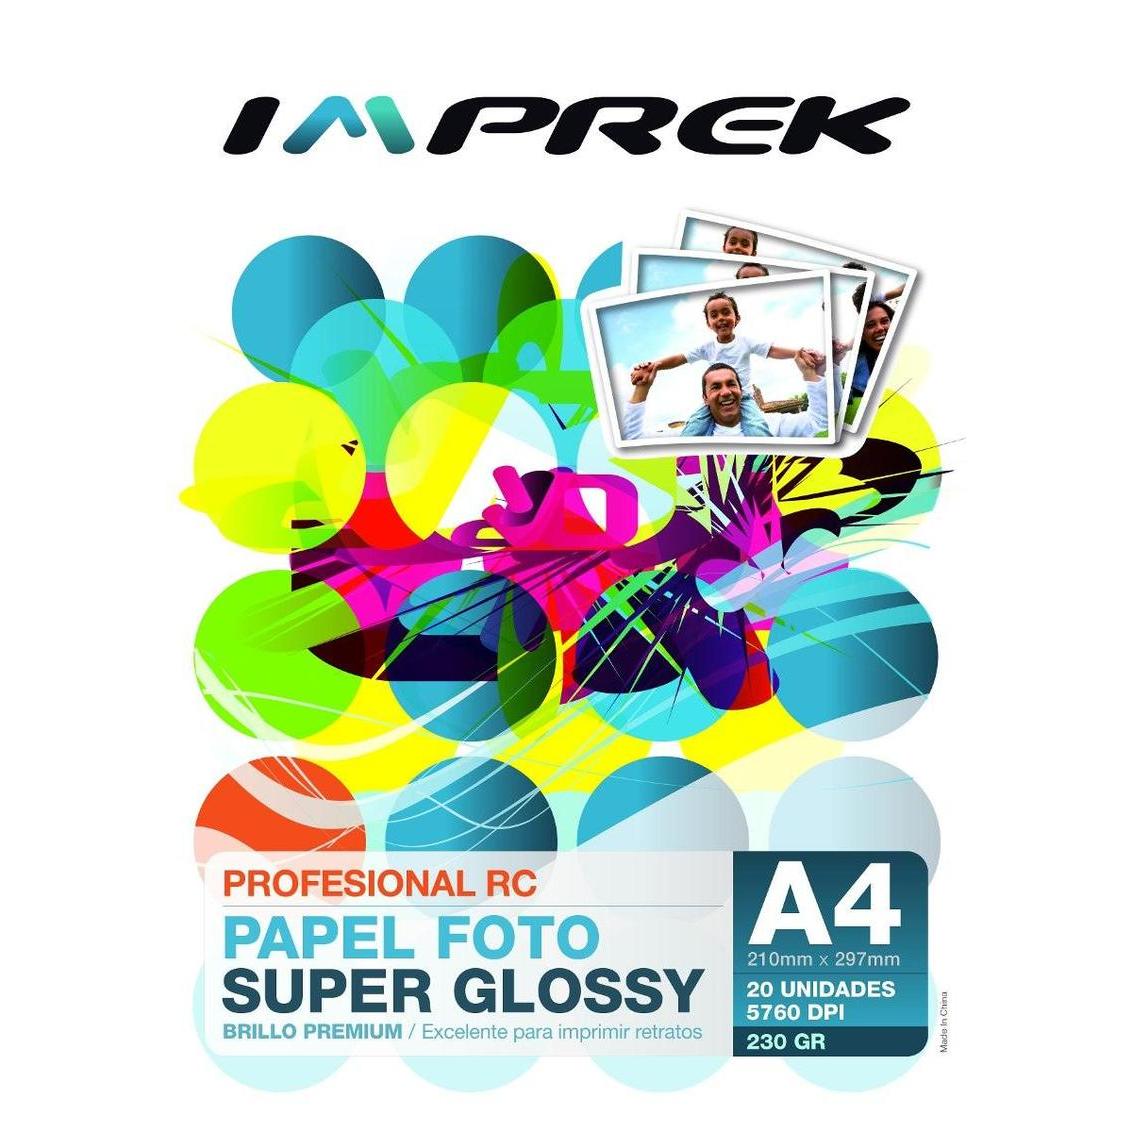  Si buscas Papel Foto Rc Glossy Microporo 230gr A4 X 20 Hojas Imprek puedes comprarlo con Imprek está en venta al mejor precio